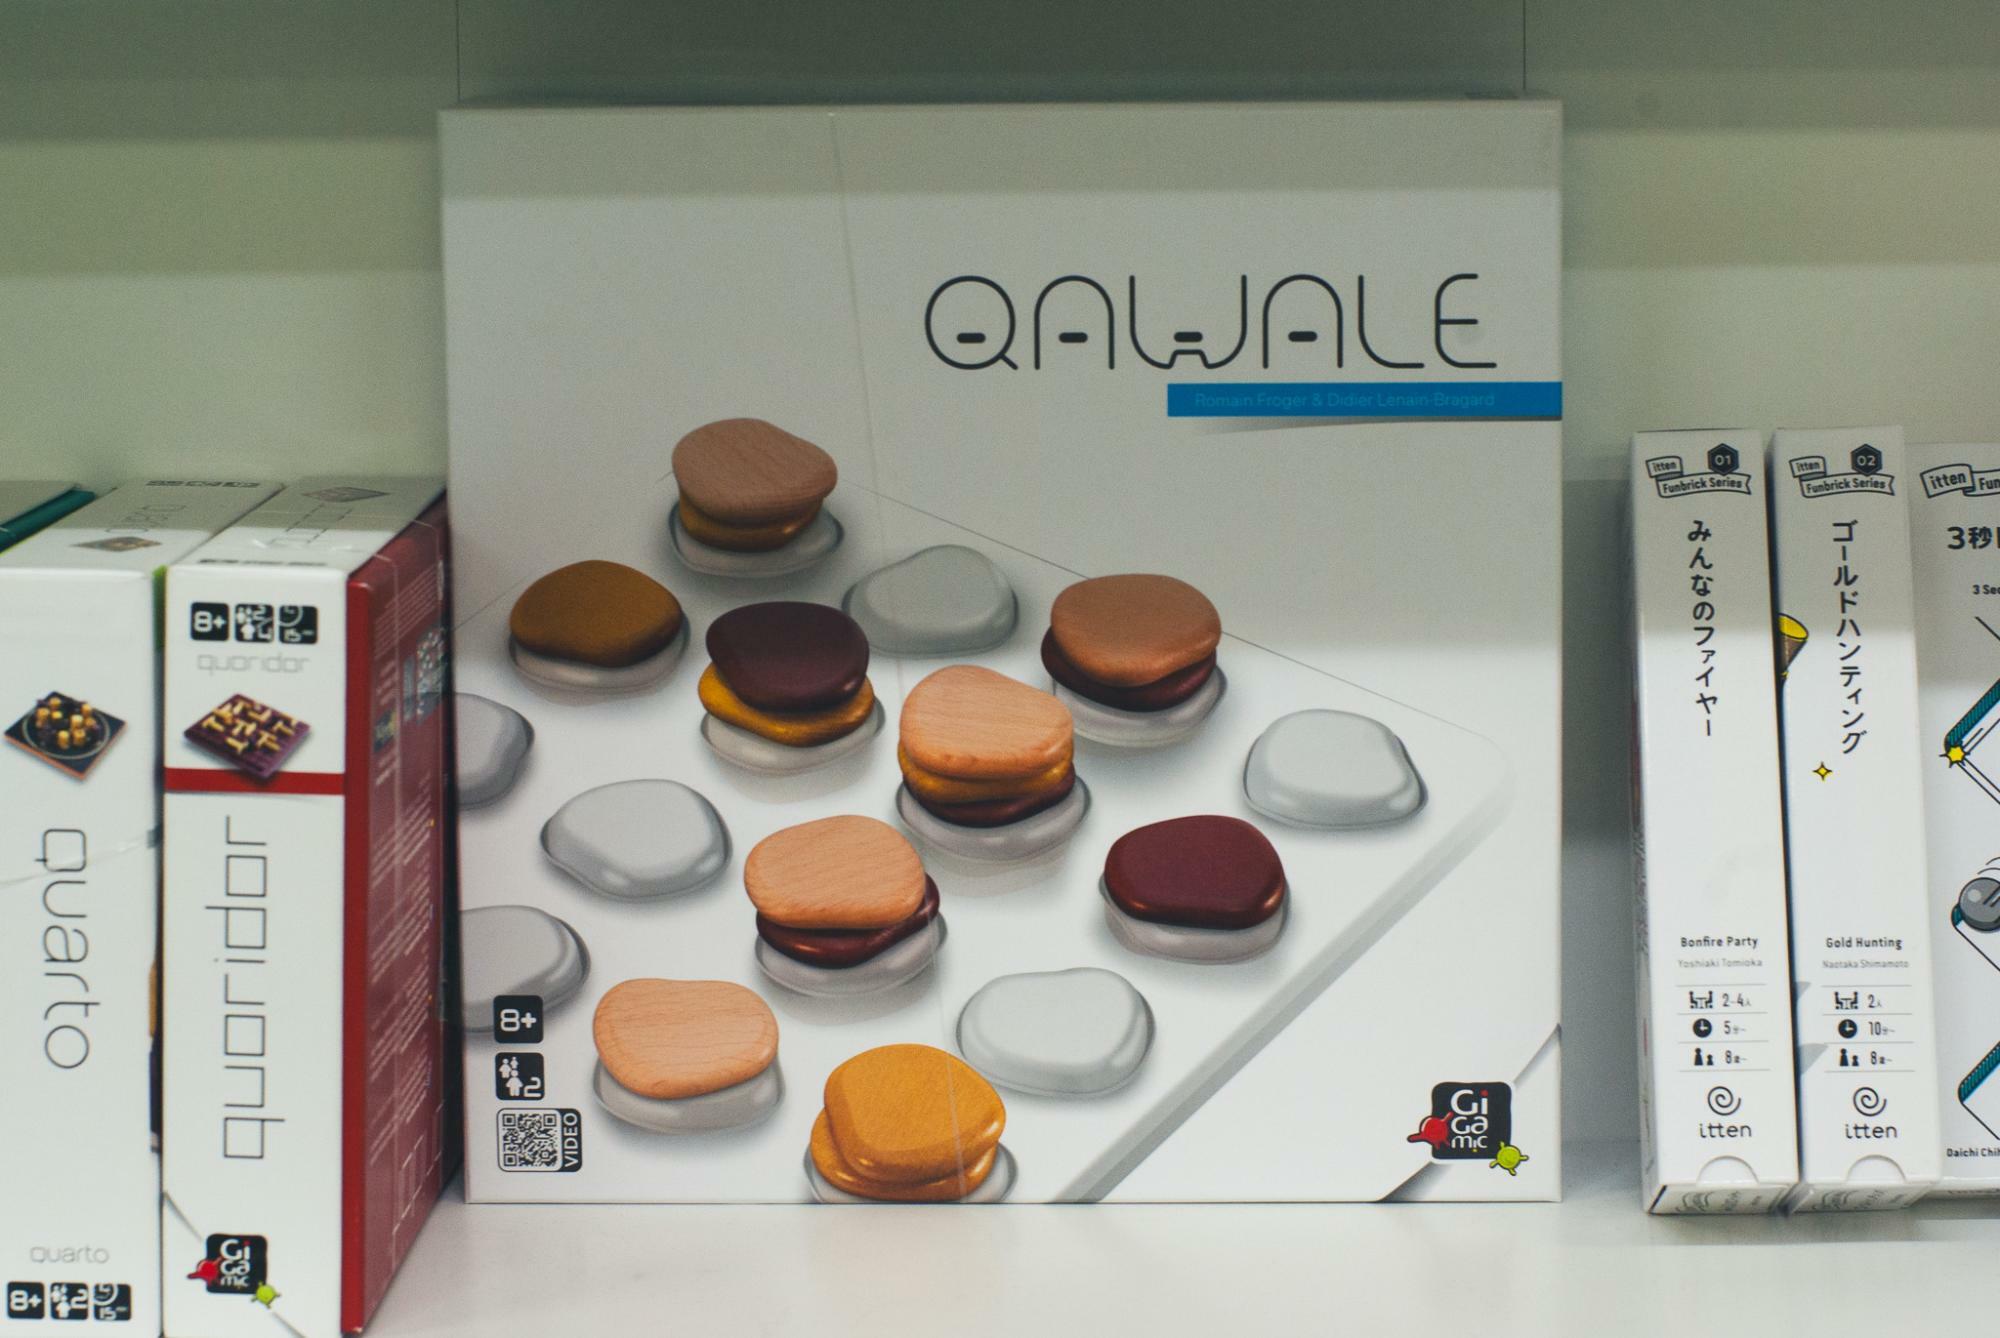 デザイン性の高い、小石を積み上げるフランス製の四目並べゲーム「カワレ」